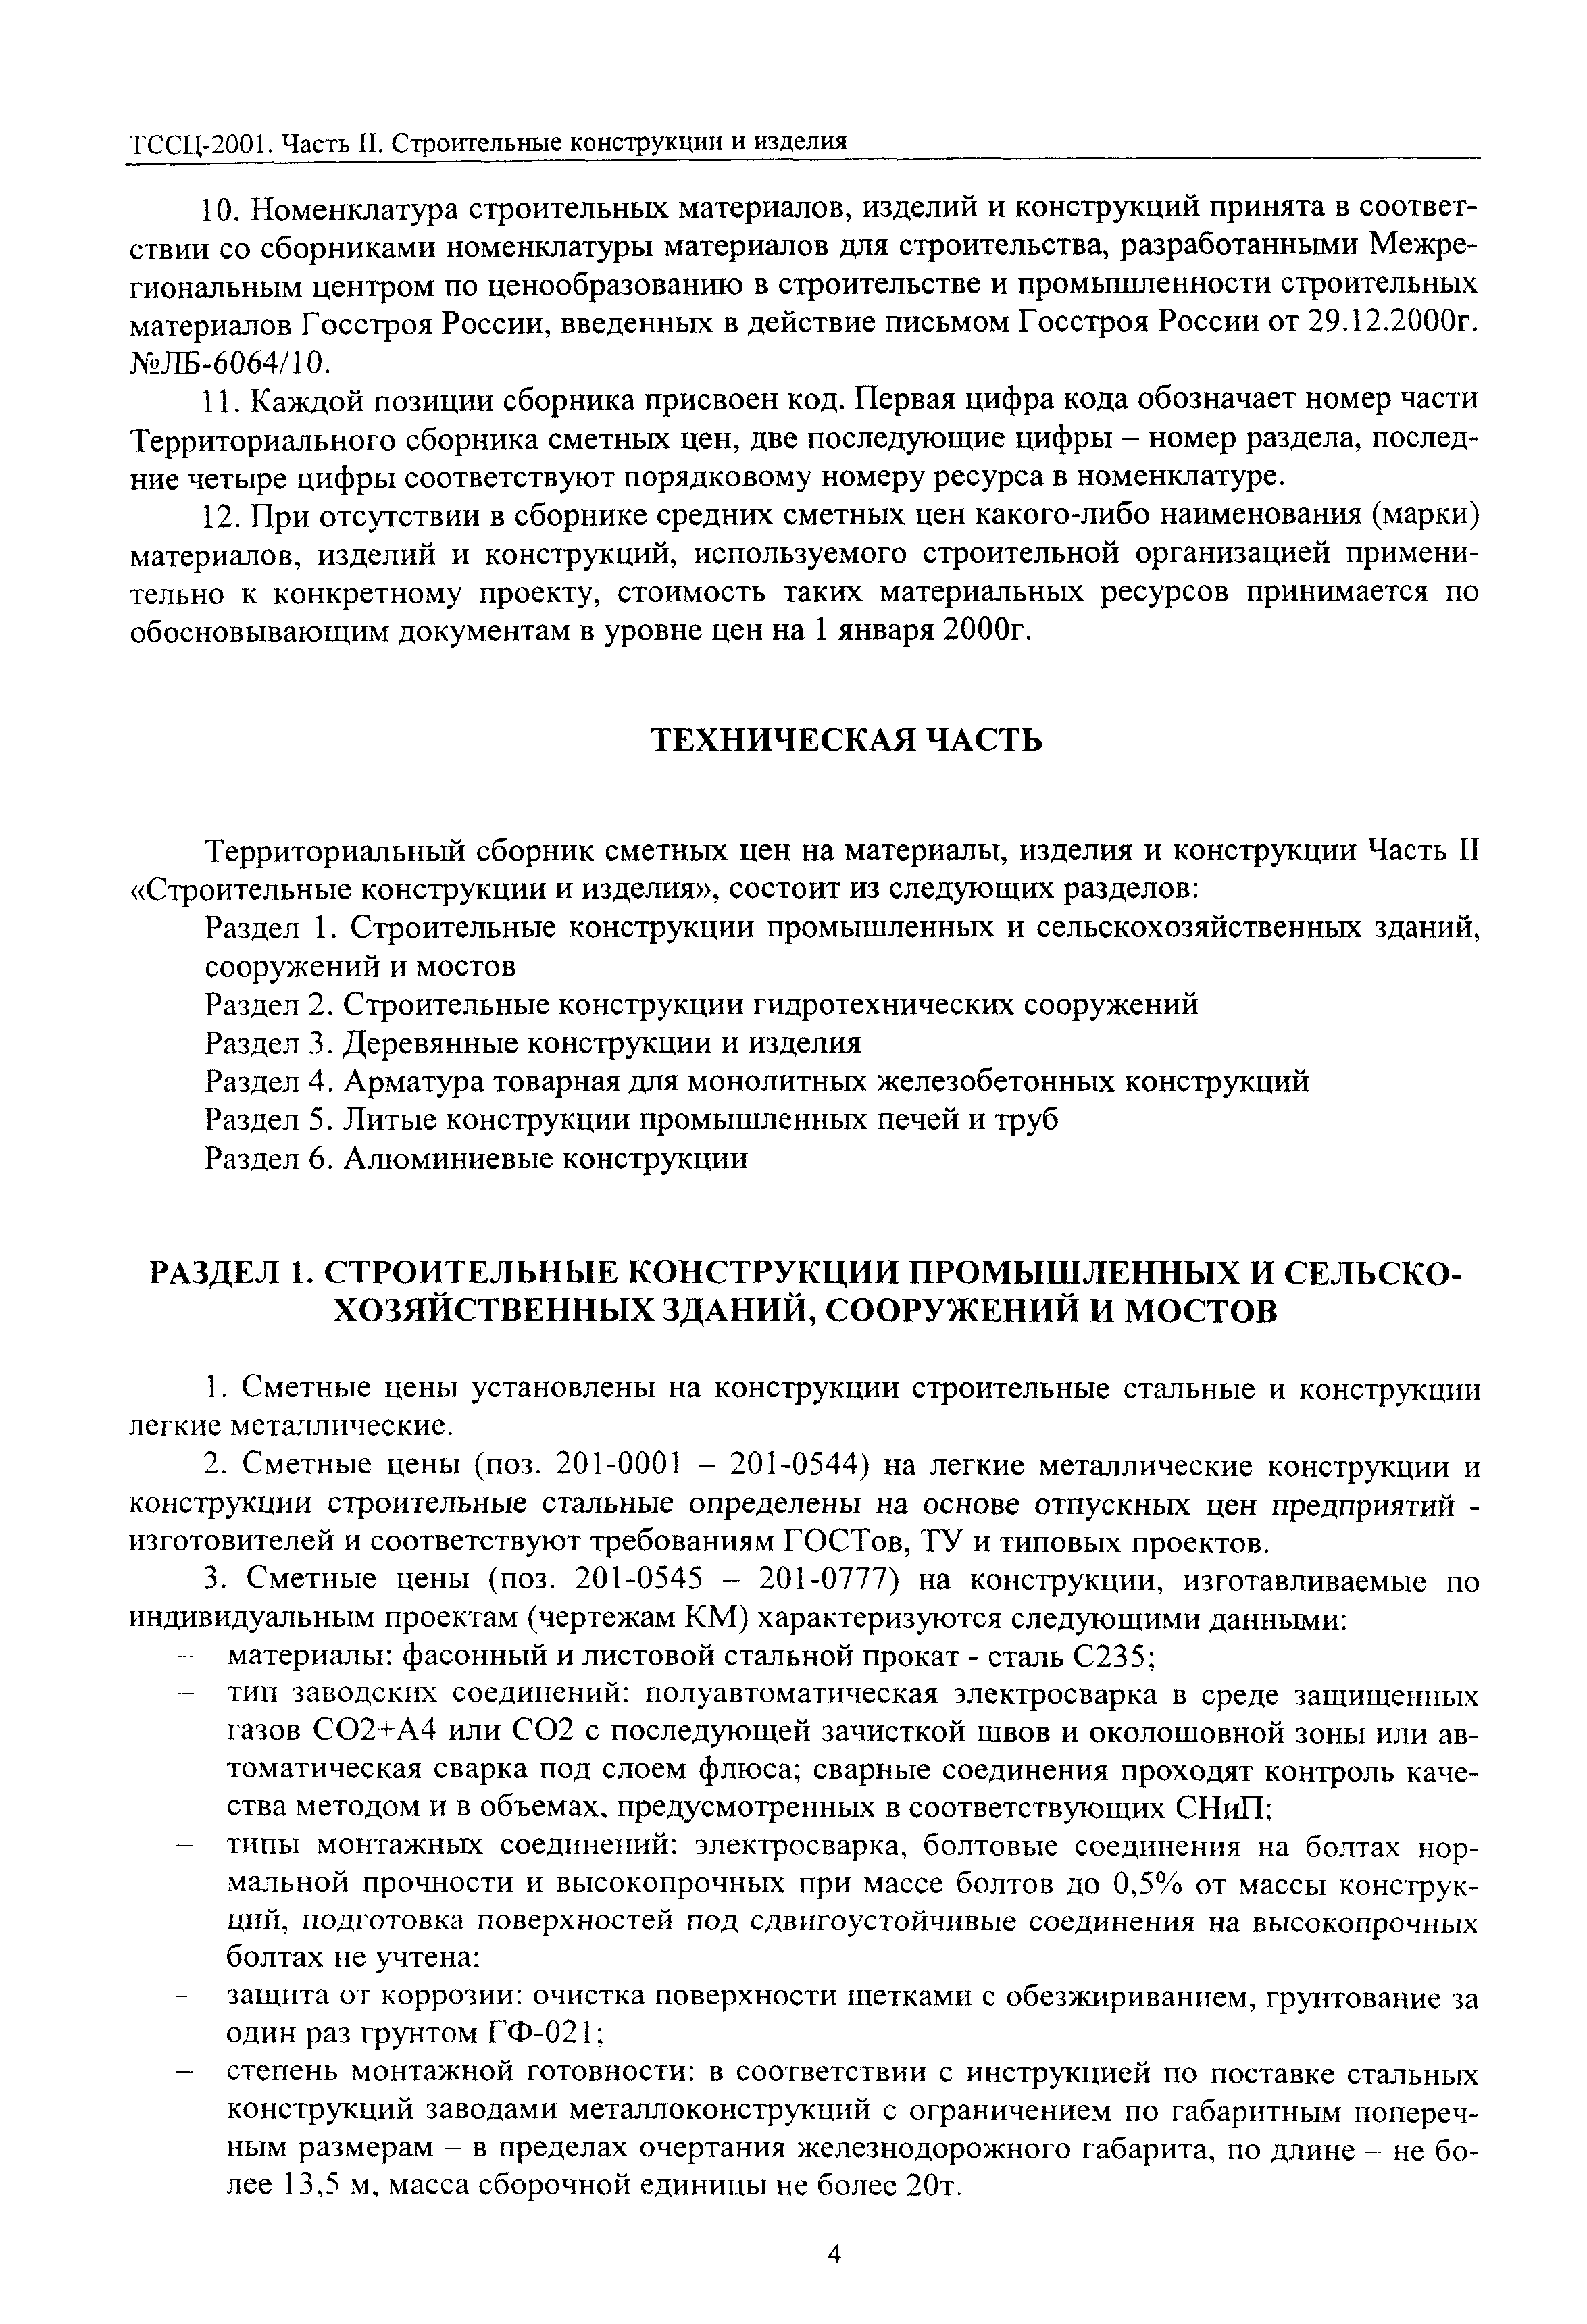 ТССЦ Воронежской области 2001